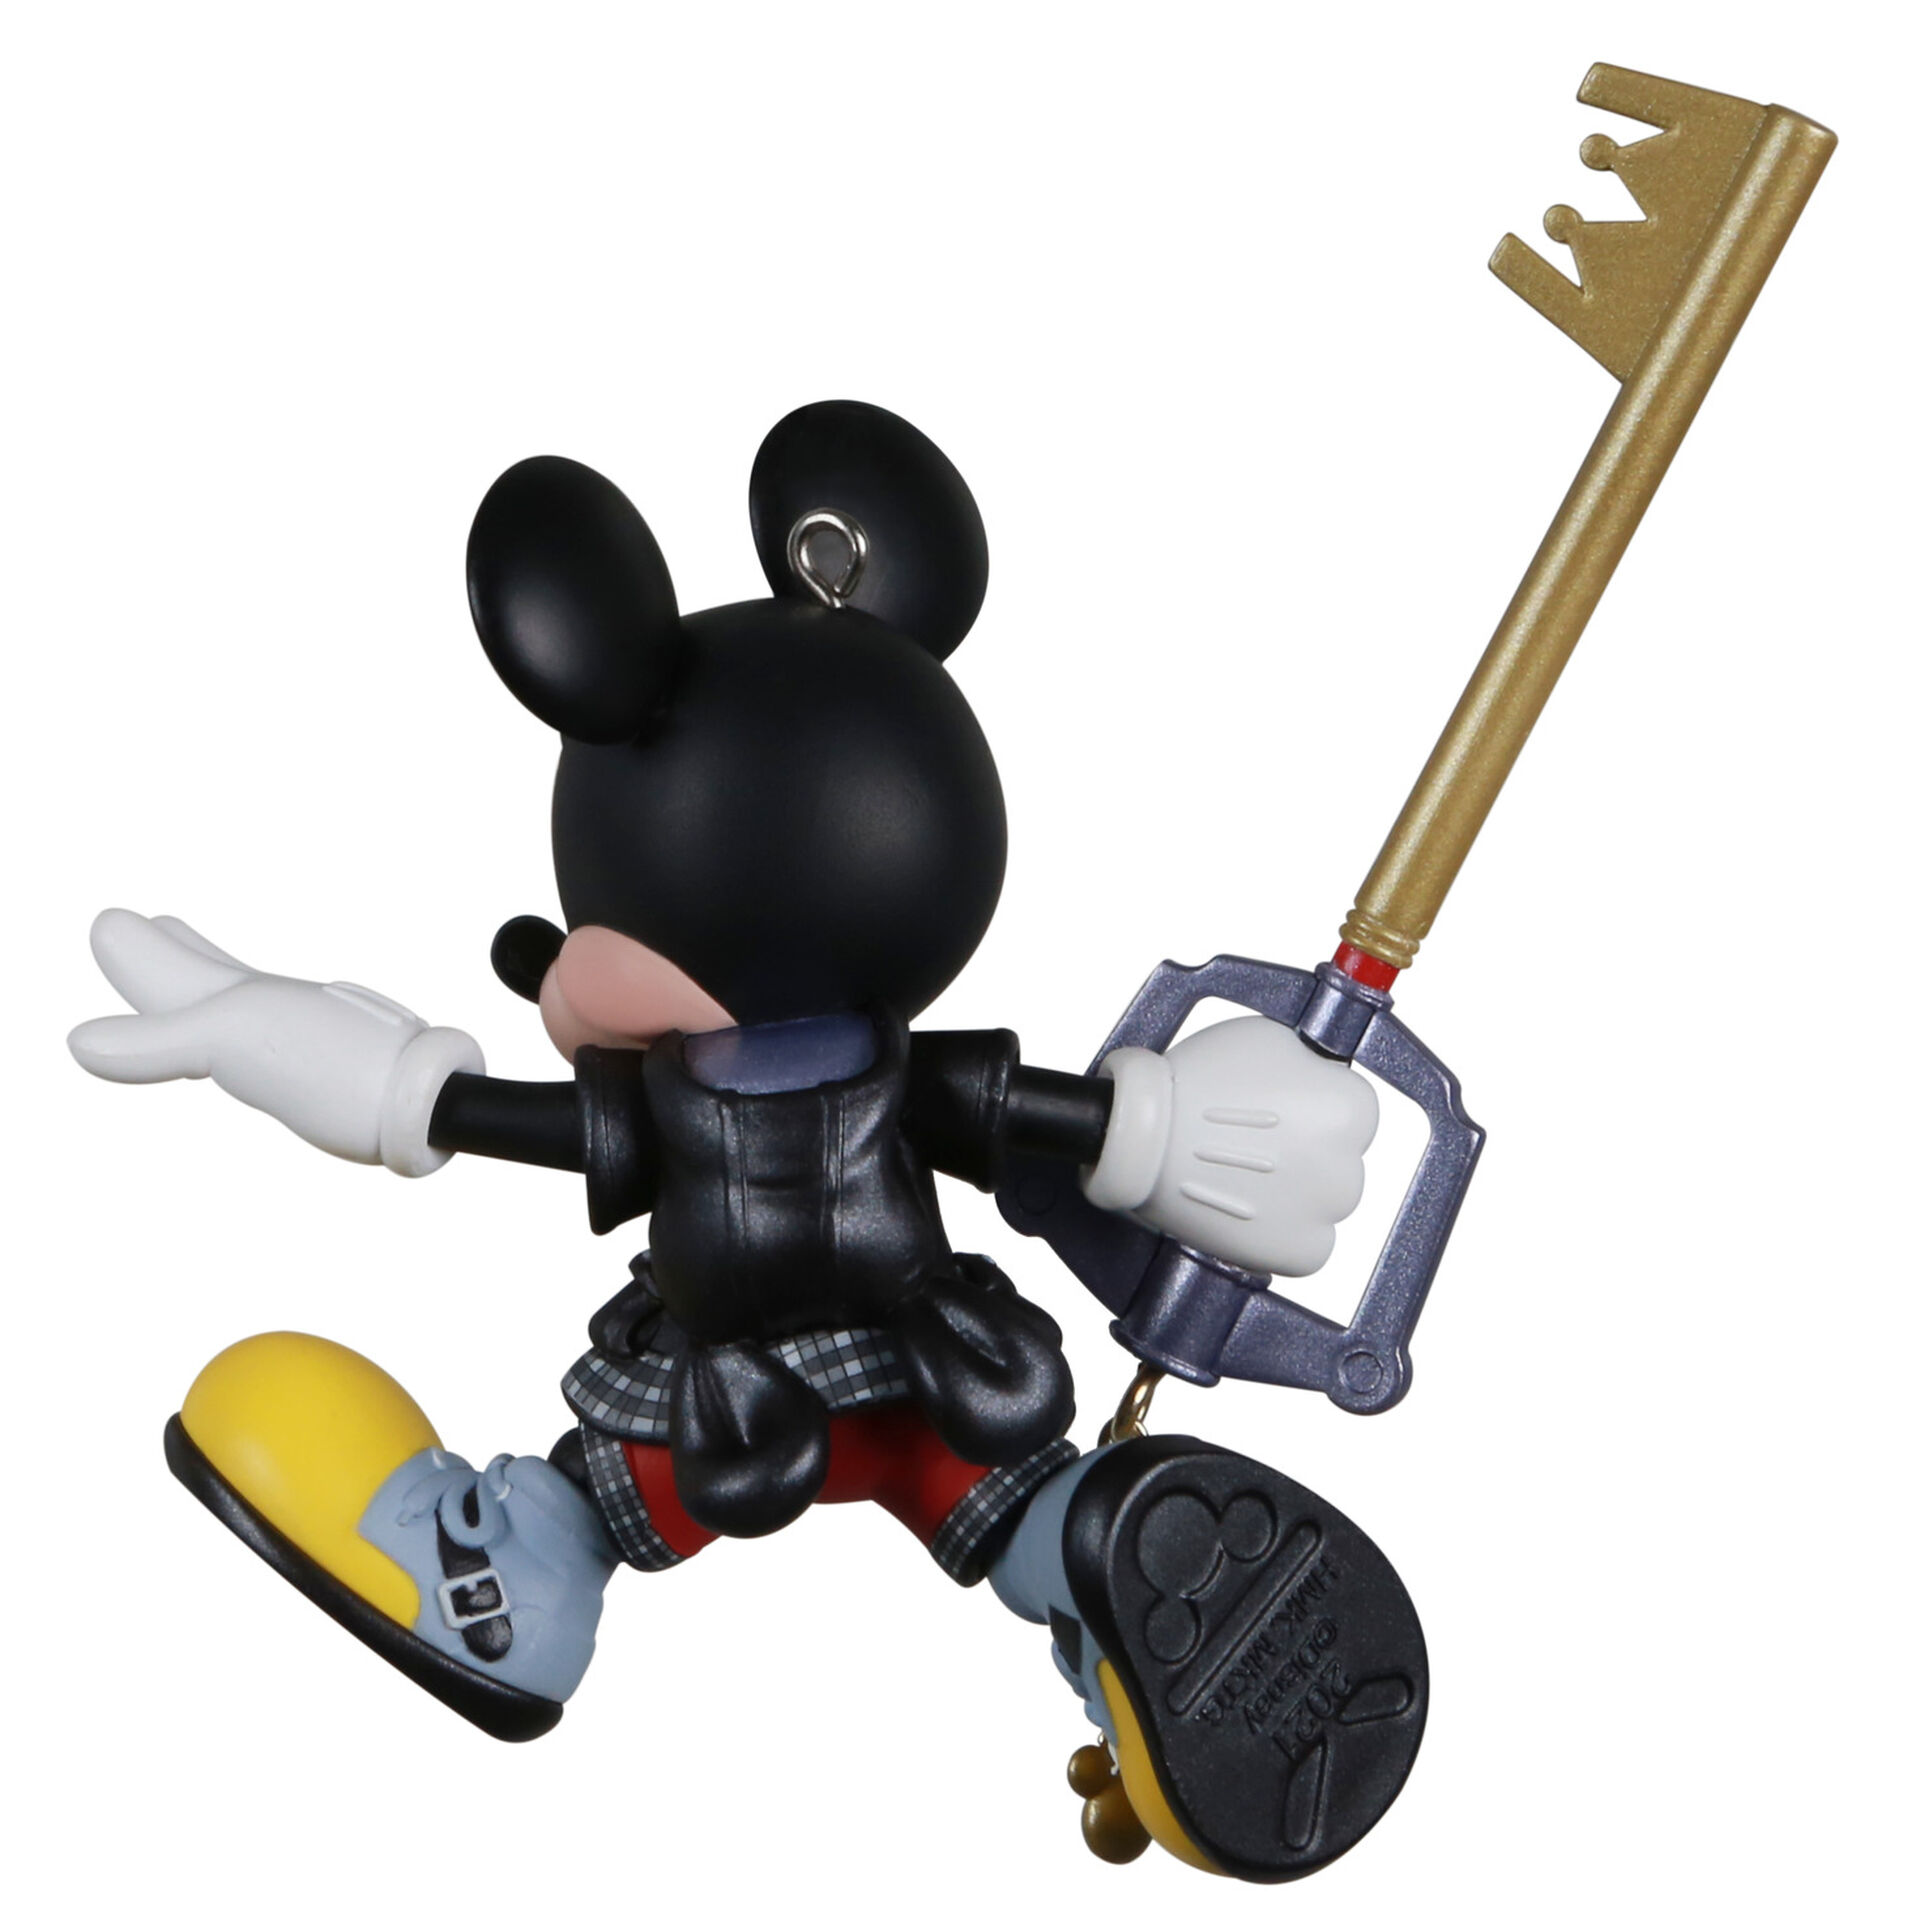 Mickey Kingdom Hearts